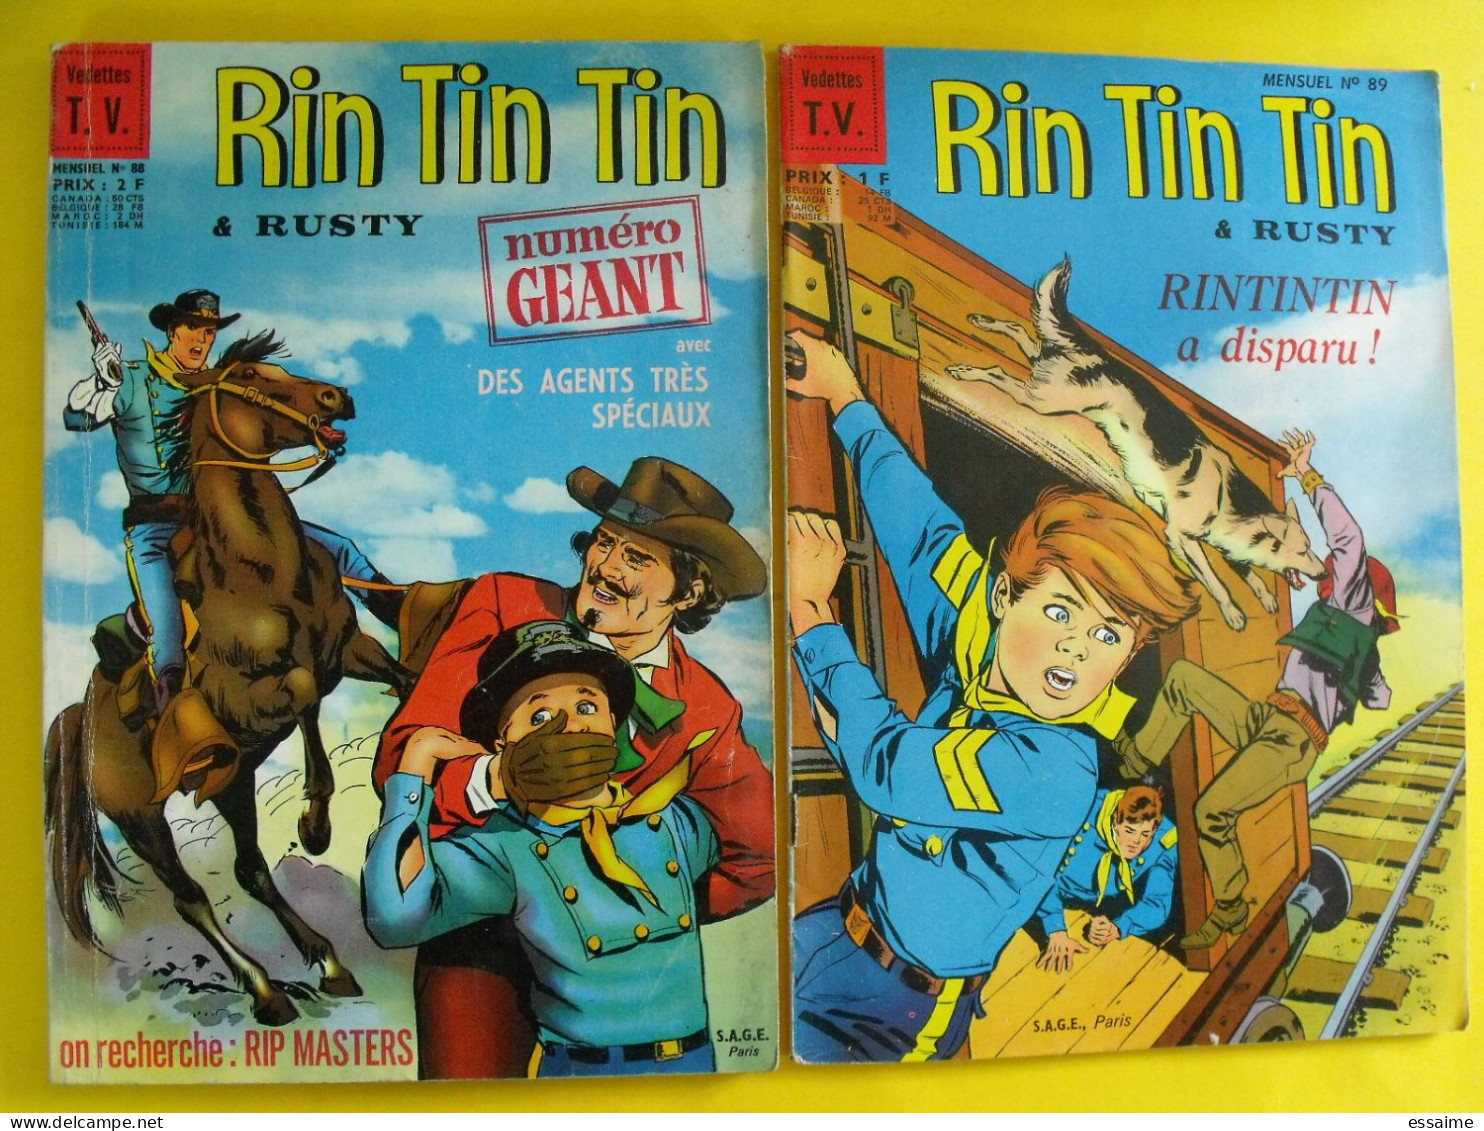 Lot Relié De 12 N° De Rintintin Rin Tin Tin Et Rusty. Mensuel Sagédition Vedettes TV. Kid Roy Découpages Indiens 1966-68 - Bernadette